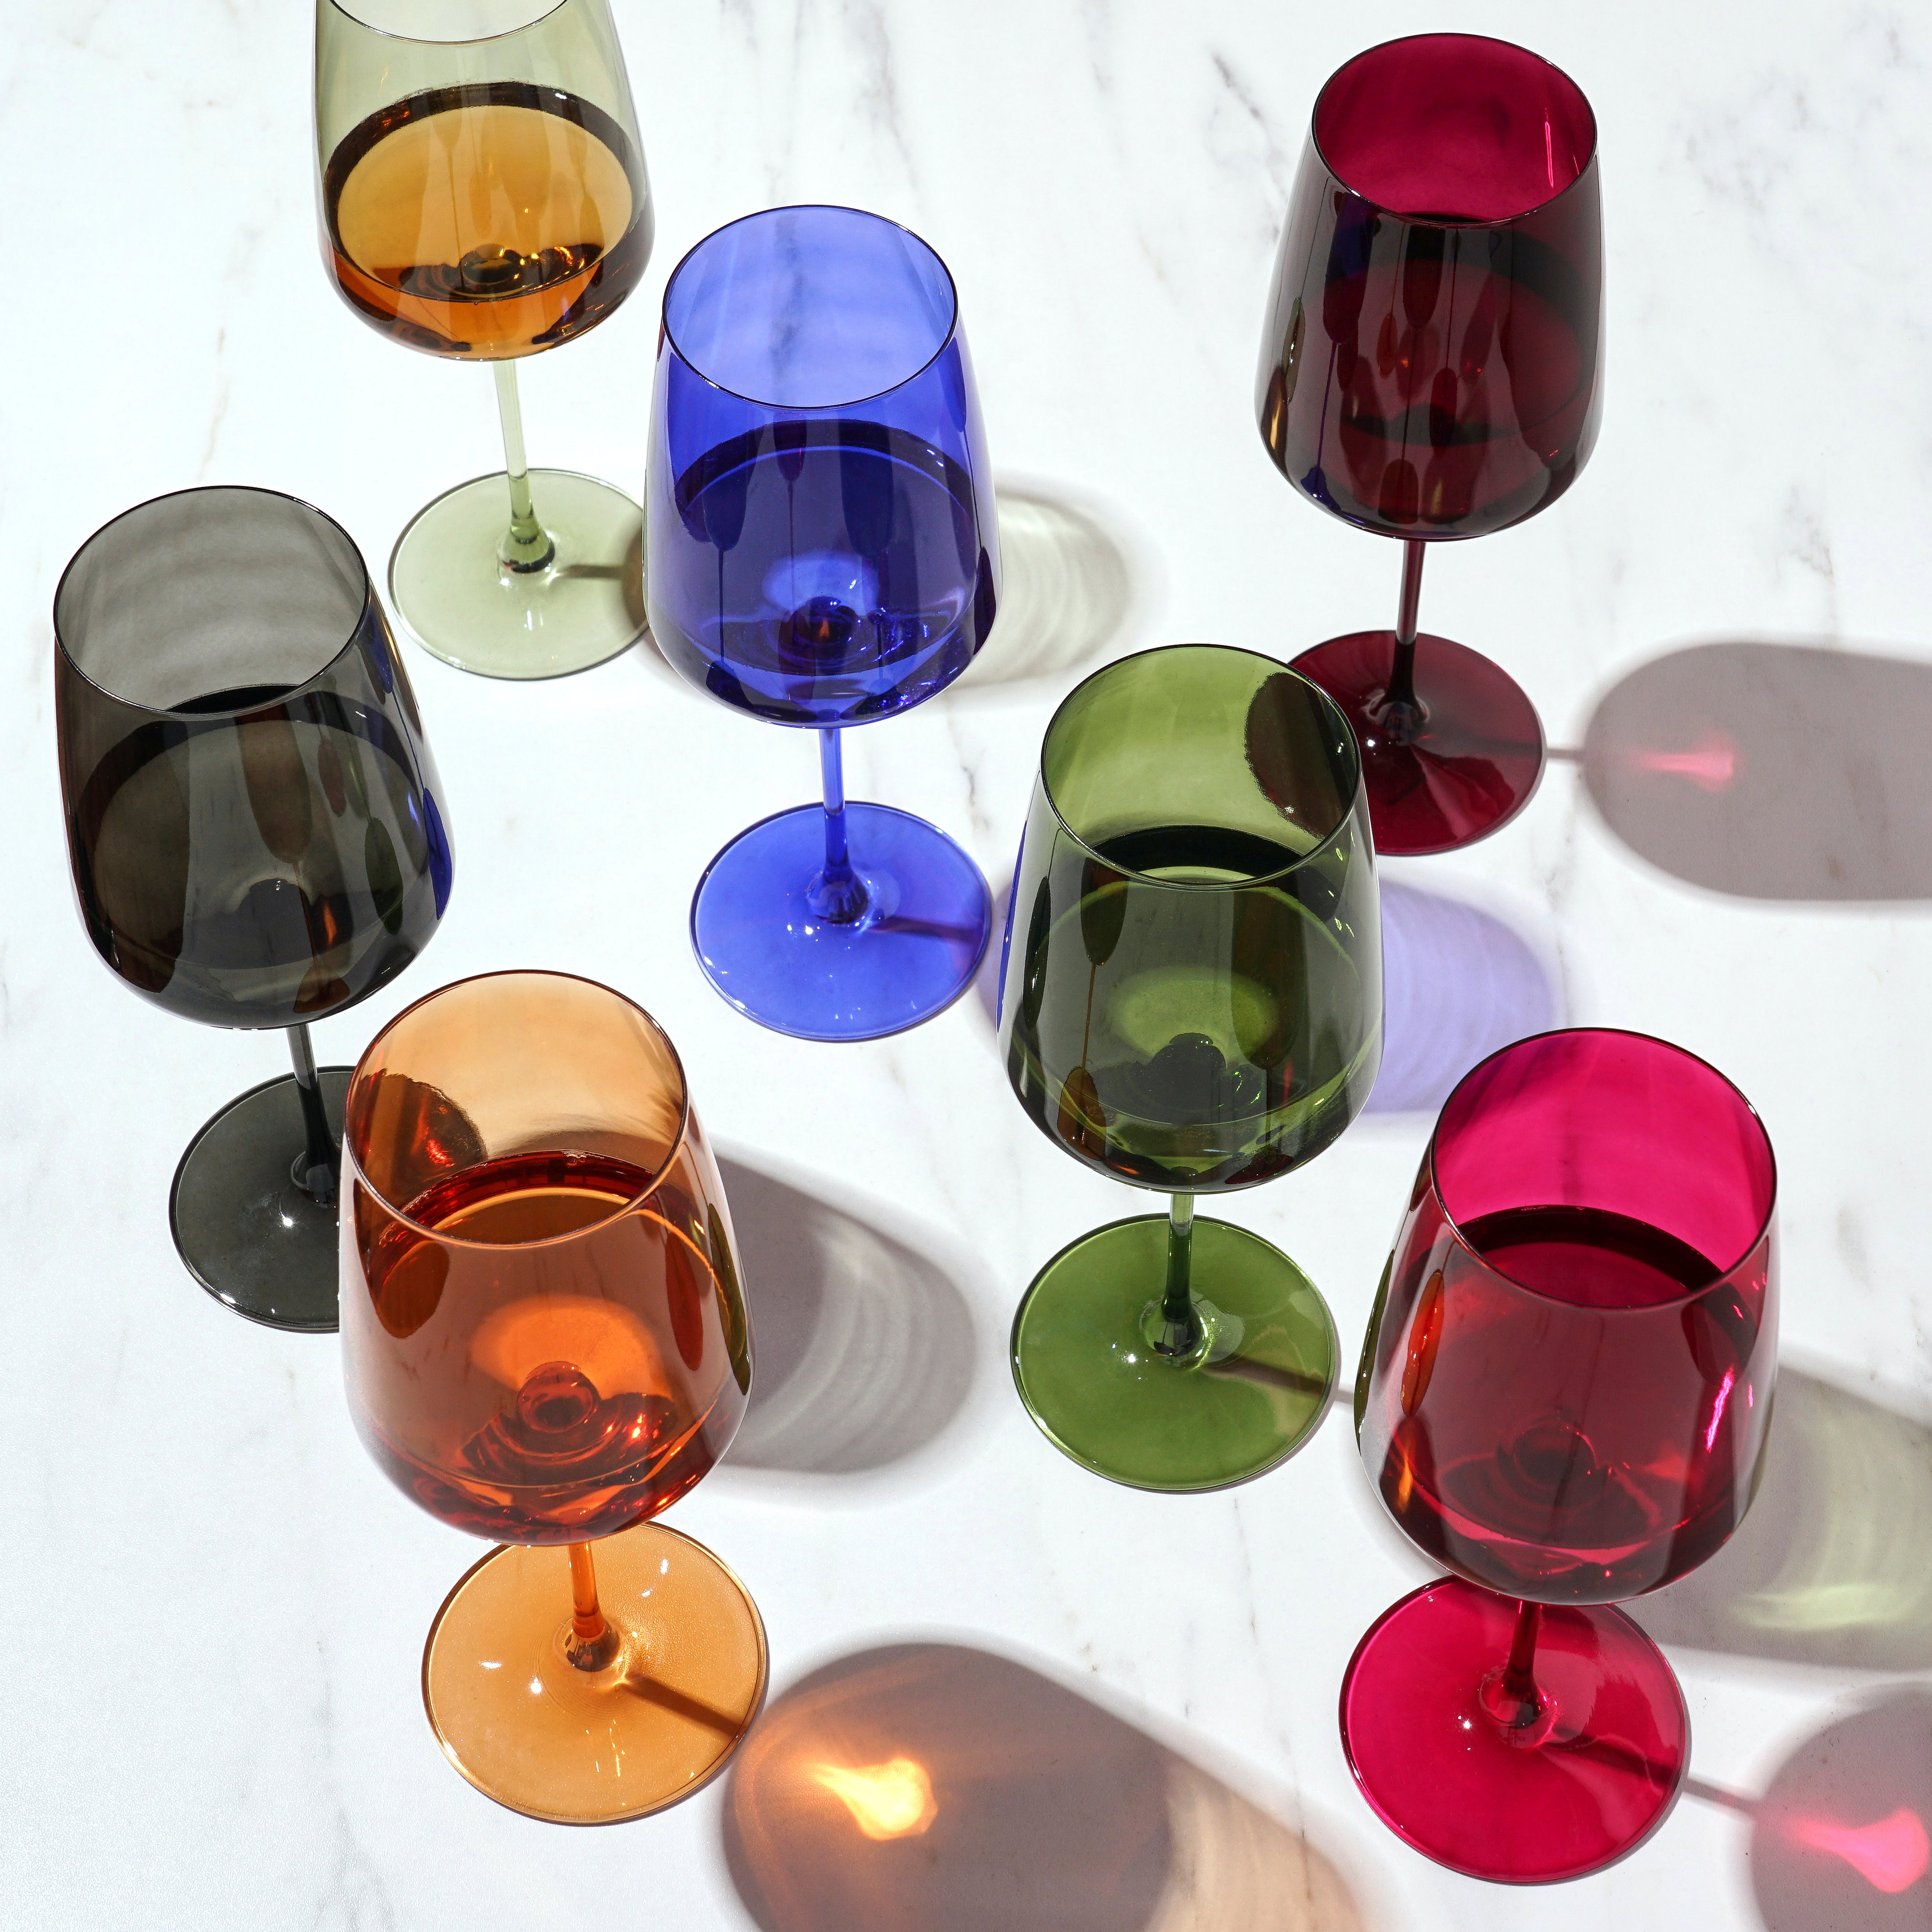 Viski Reserve Nouveau Seaside Collection Multi-Colored Wine